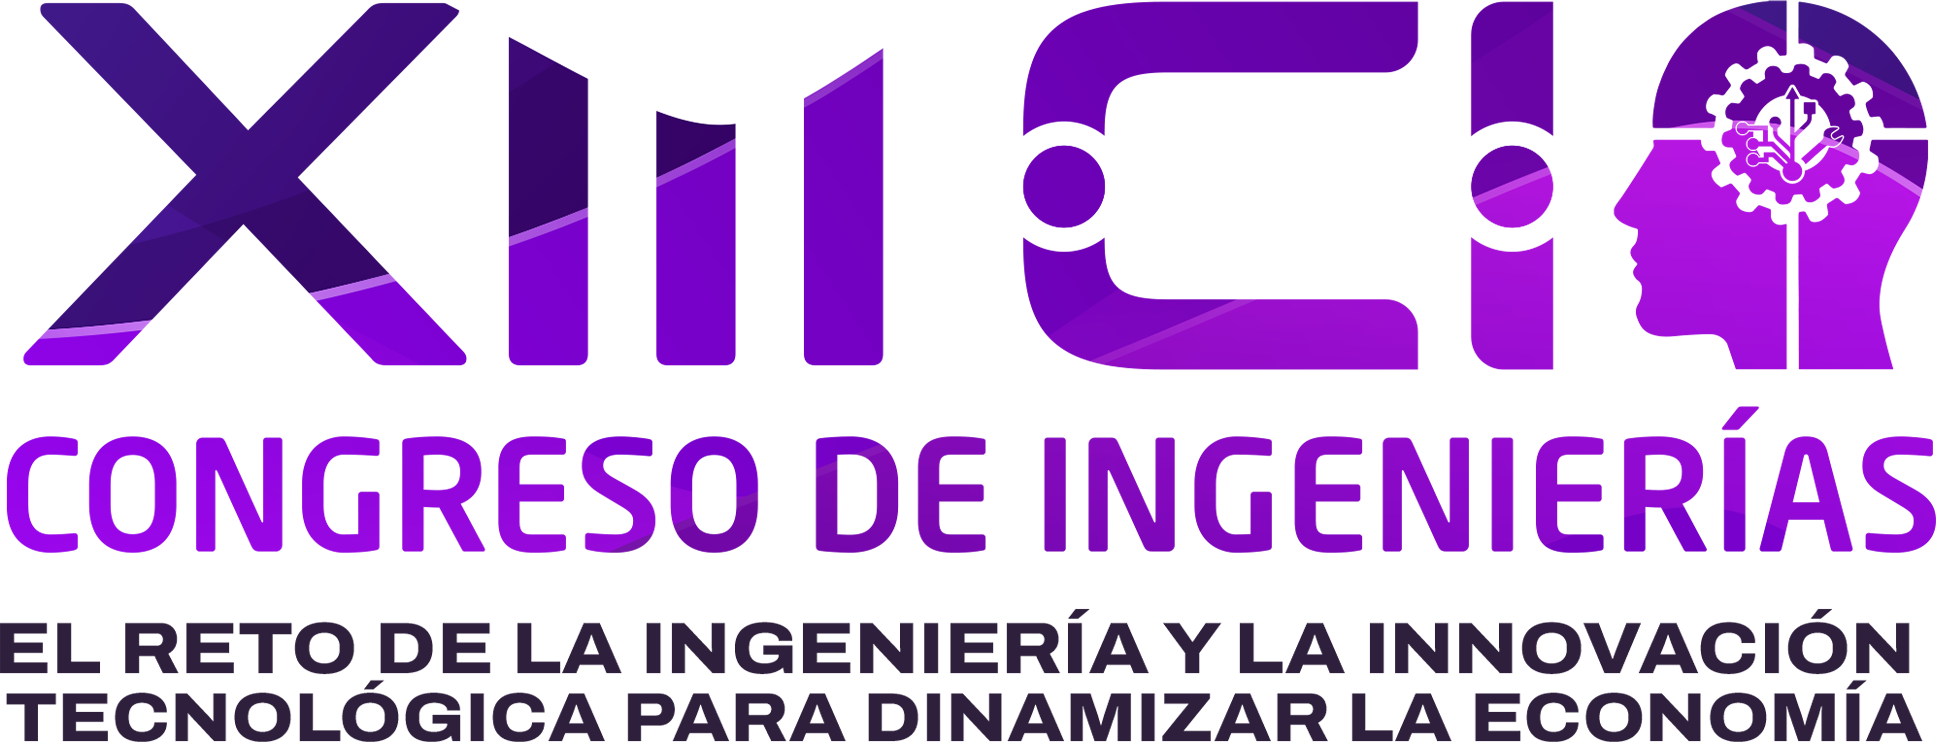 XIII Congreso de Ingenierías